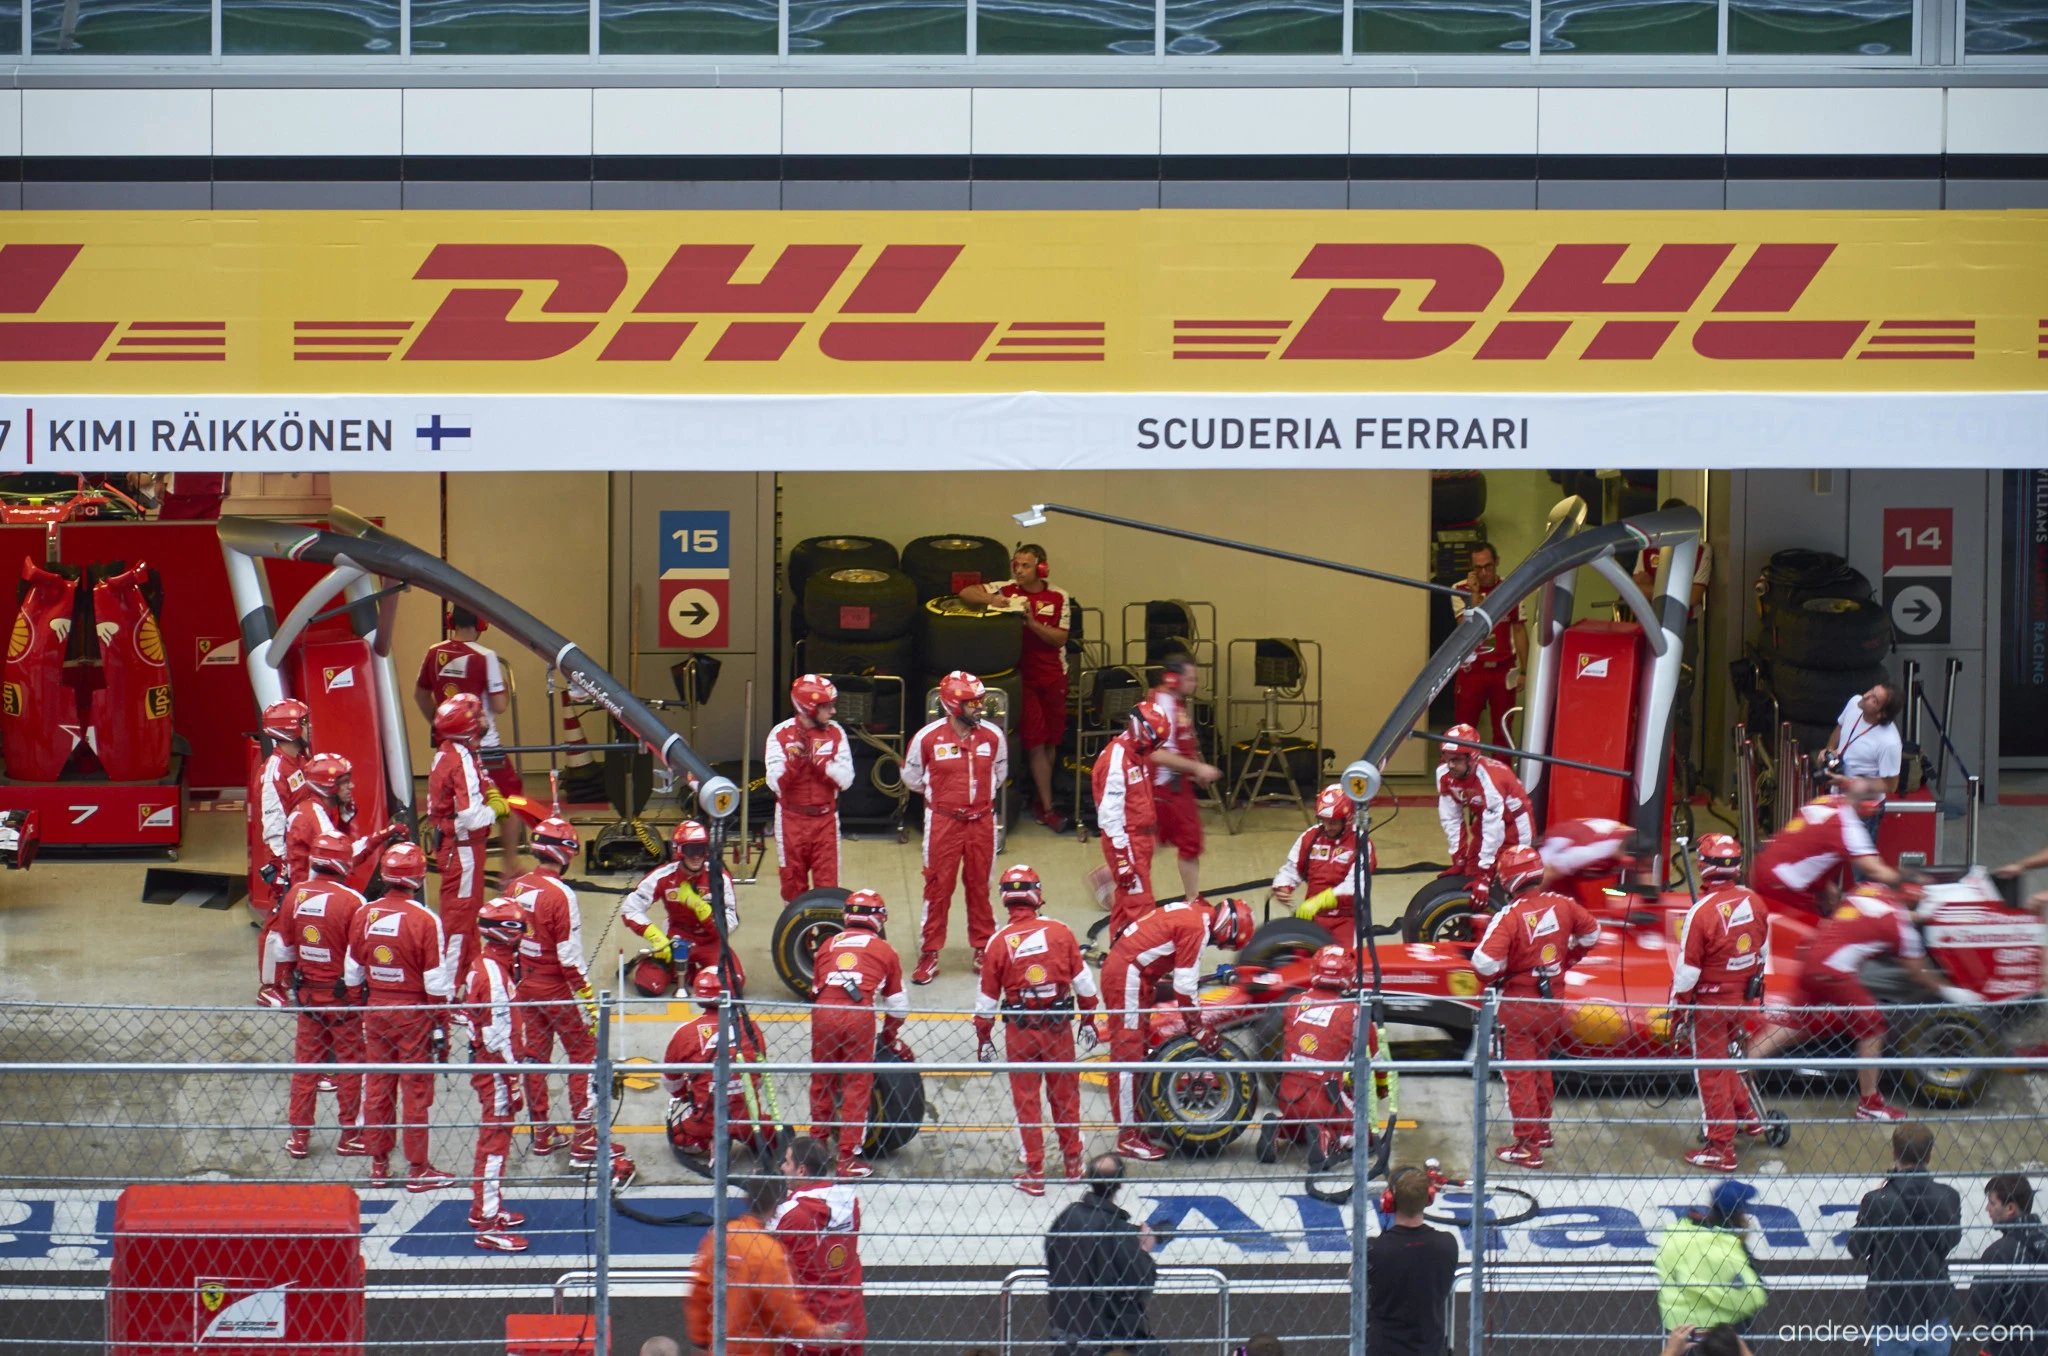 2015 Formula 1 Russian Grand Prix - Scuderia Ferrari mechanics performing warm-up exercises.